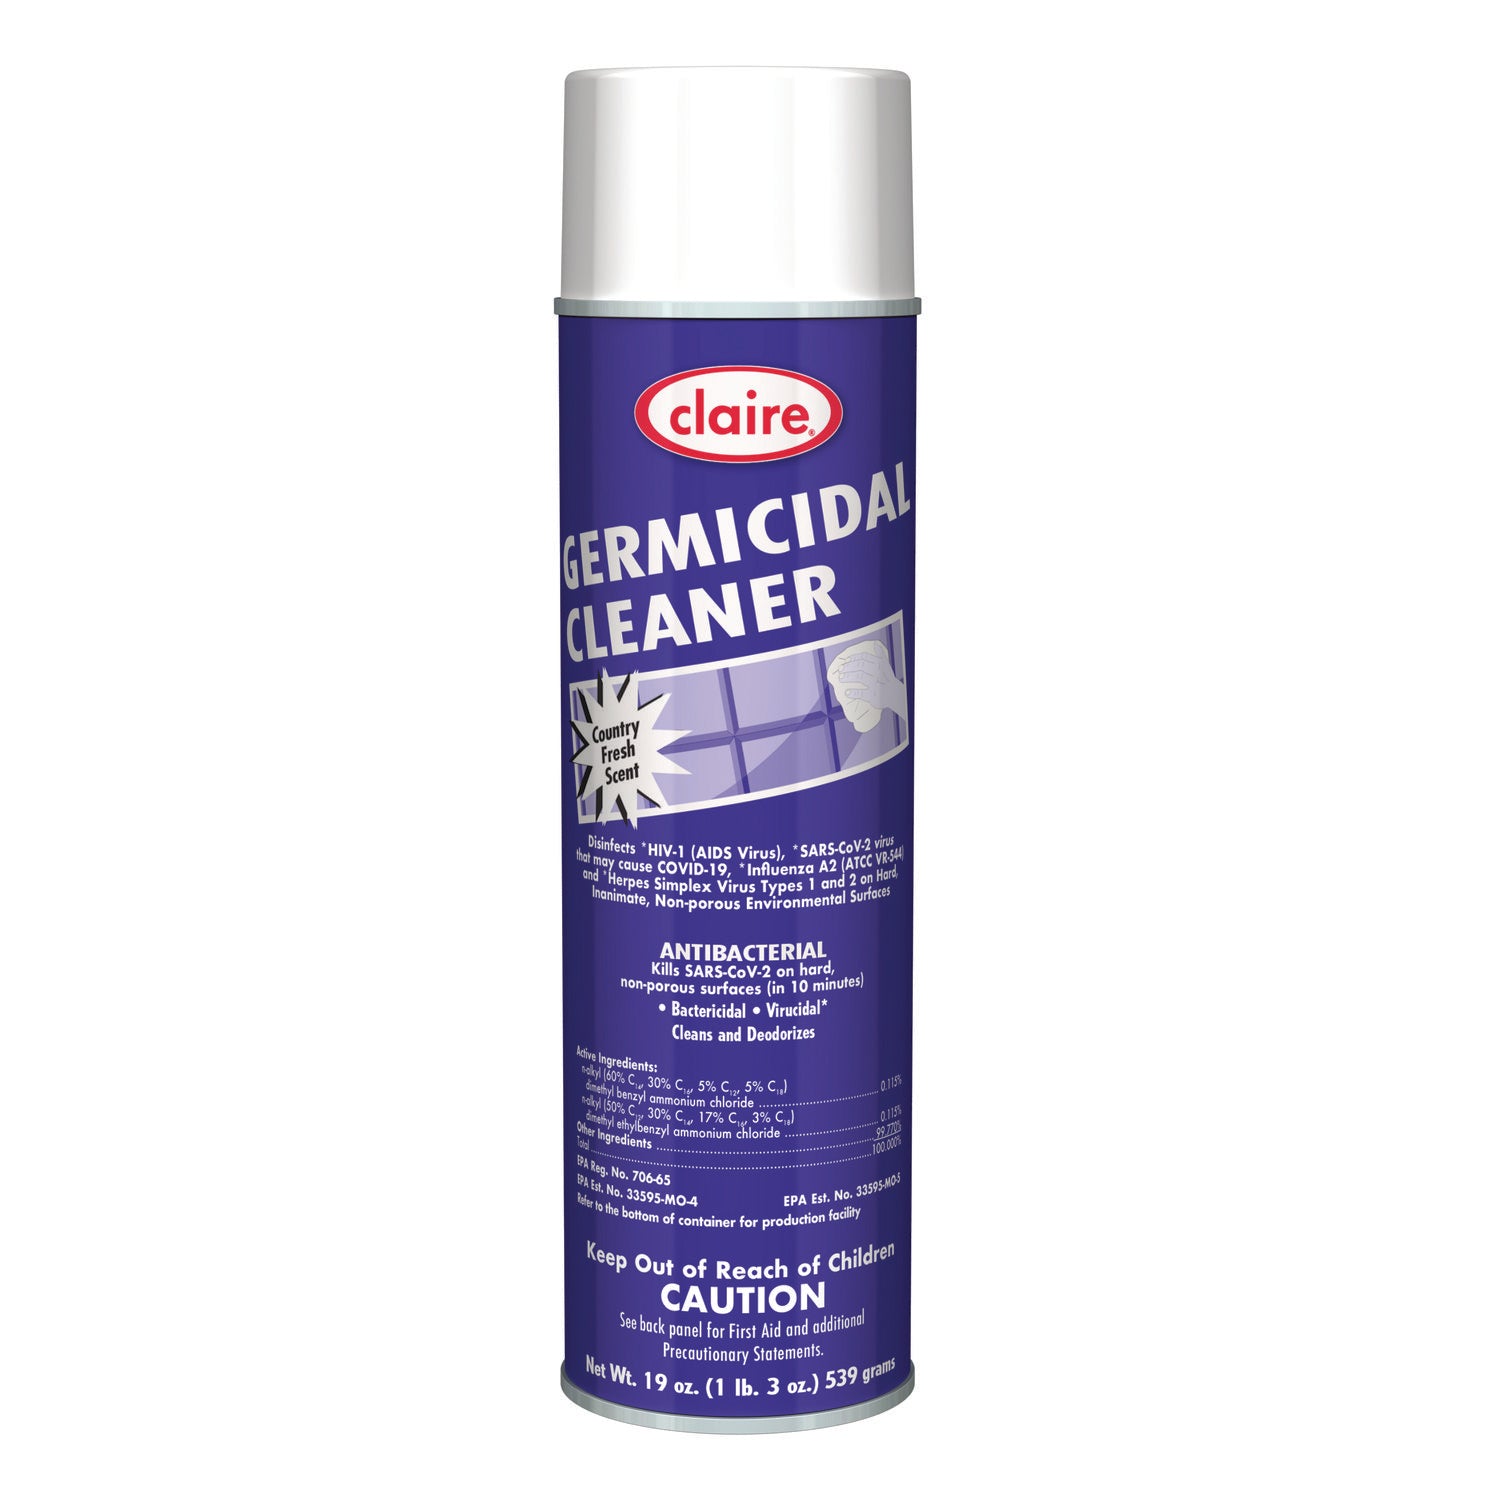 germicidal-cleaner-country-fresh-scent-19-oz-aerosol-spray-12-carton_cgc876 - 1